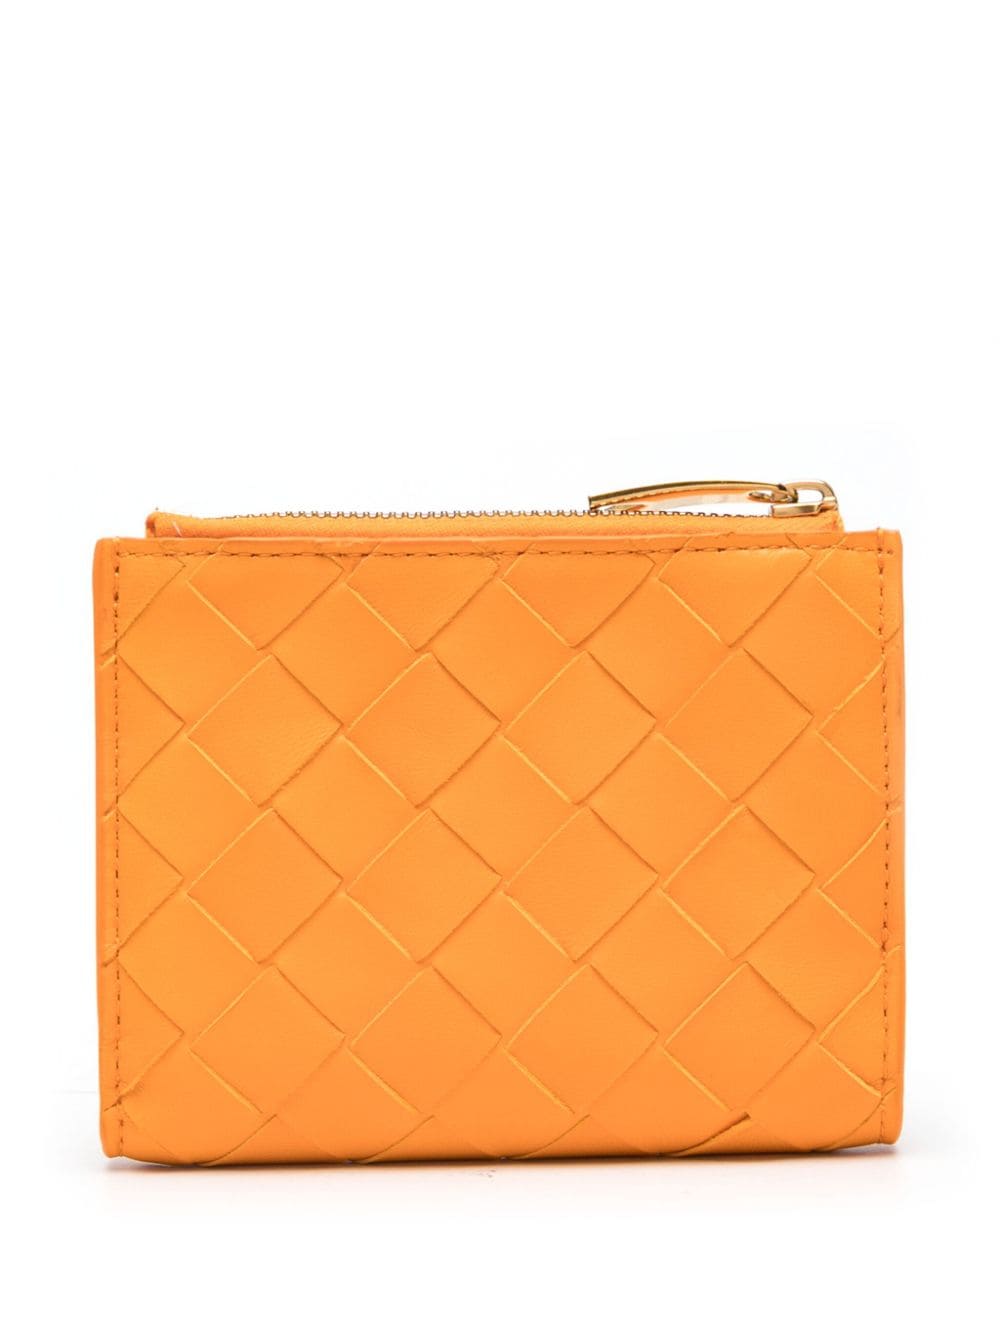 Bottega Veneta small Intrecciato Bi-Fold leather wallet - Oranje